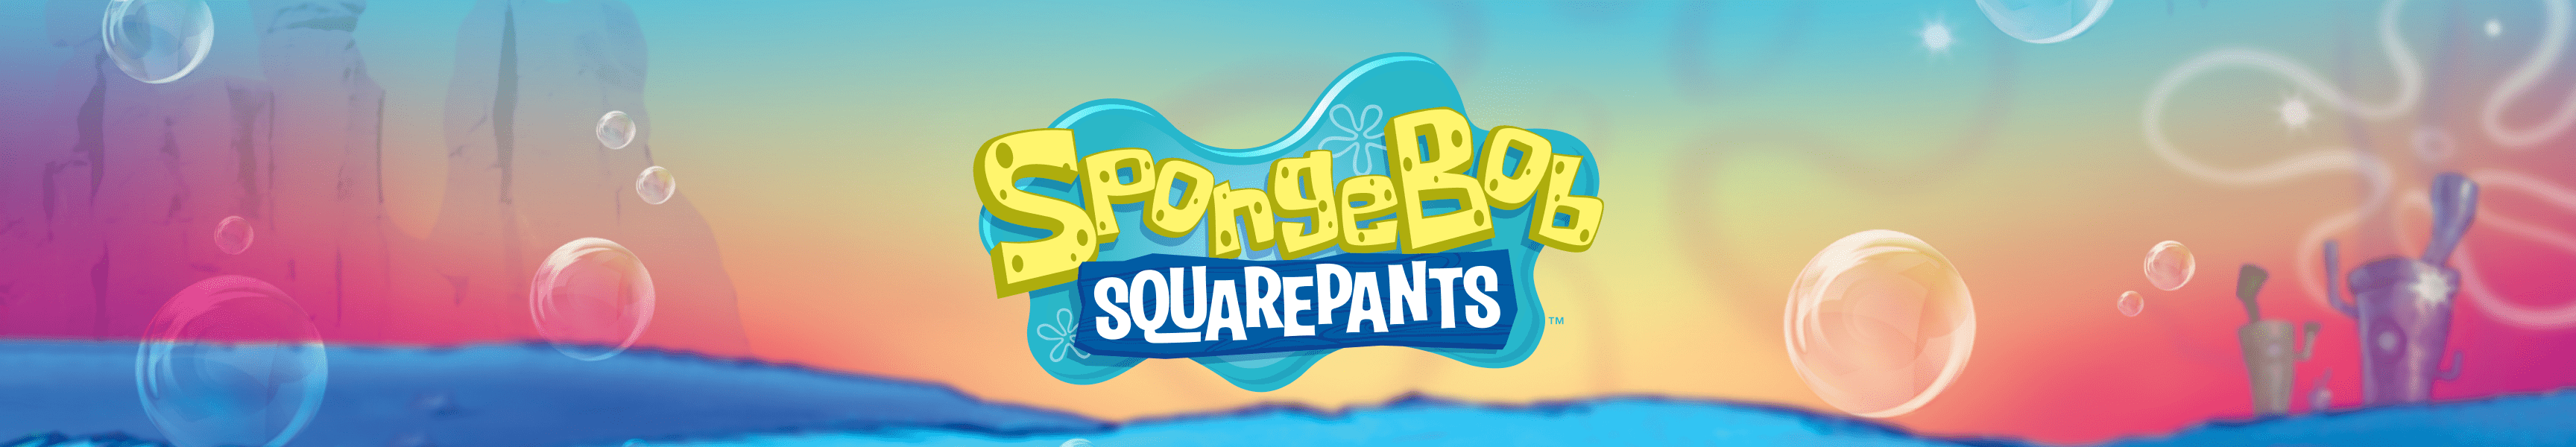 SpongeBob SquarePants F.U.N.